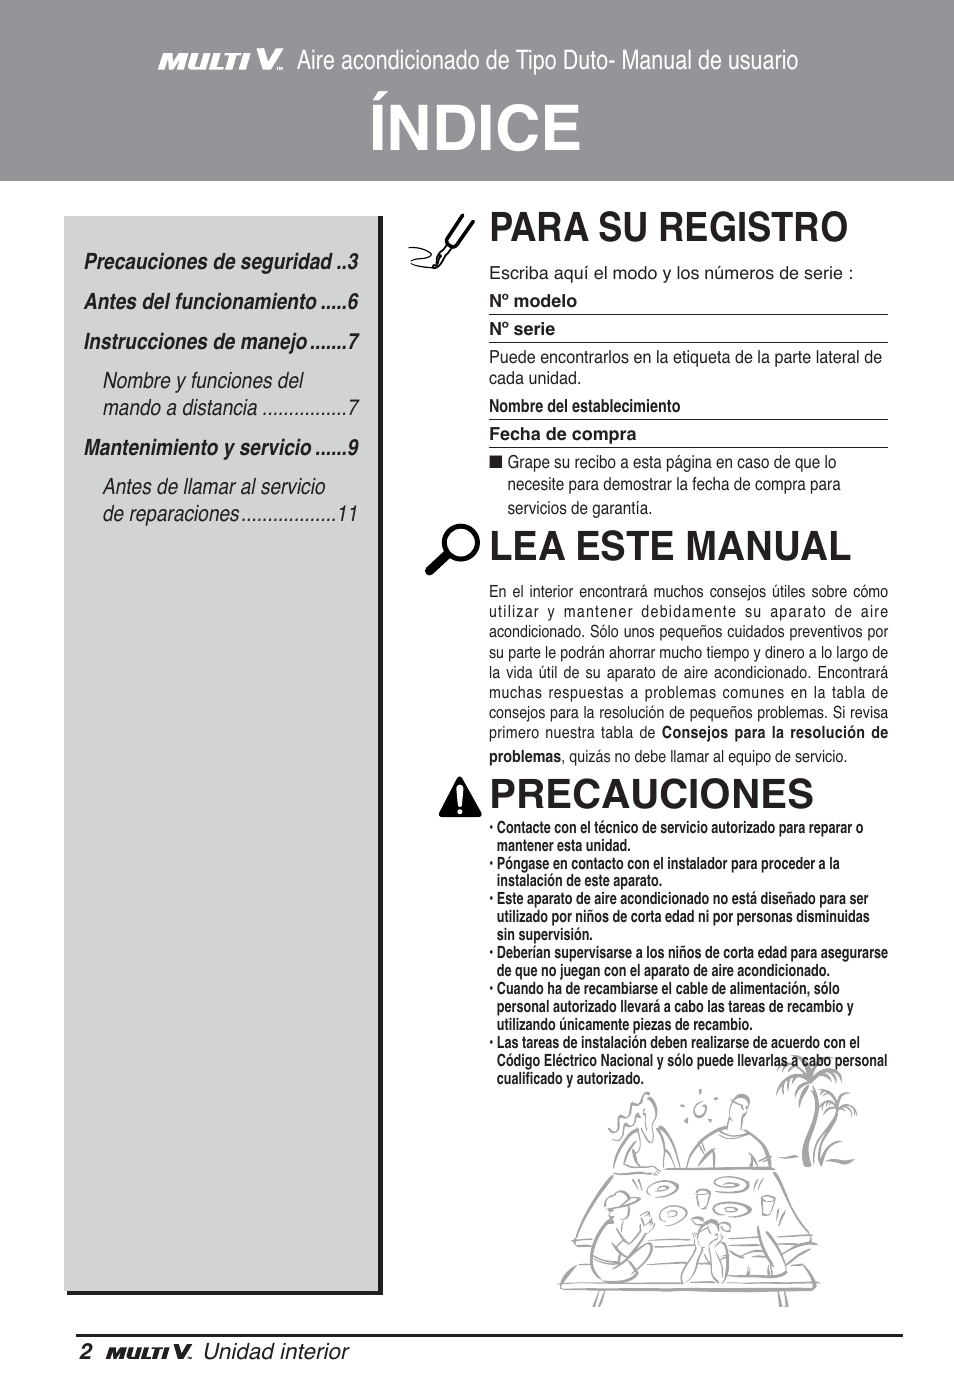 Índice, Para su registro, Lea este manual | LG ARNU12GL2G2 User Manual |  Page 22 / 91 | Original mode